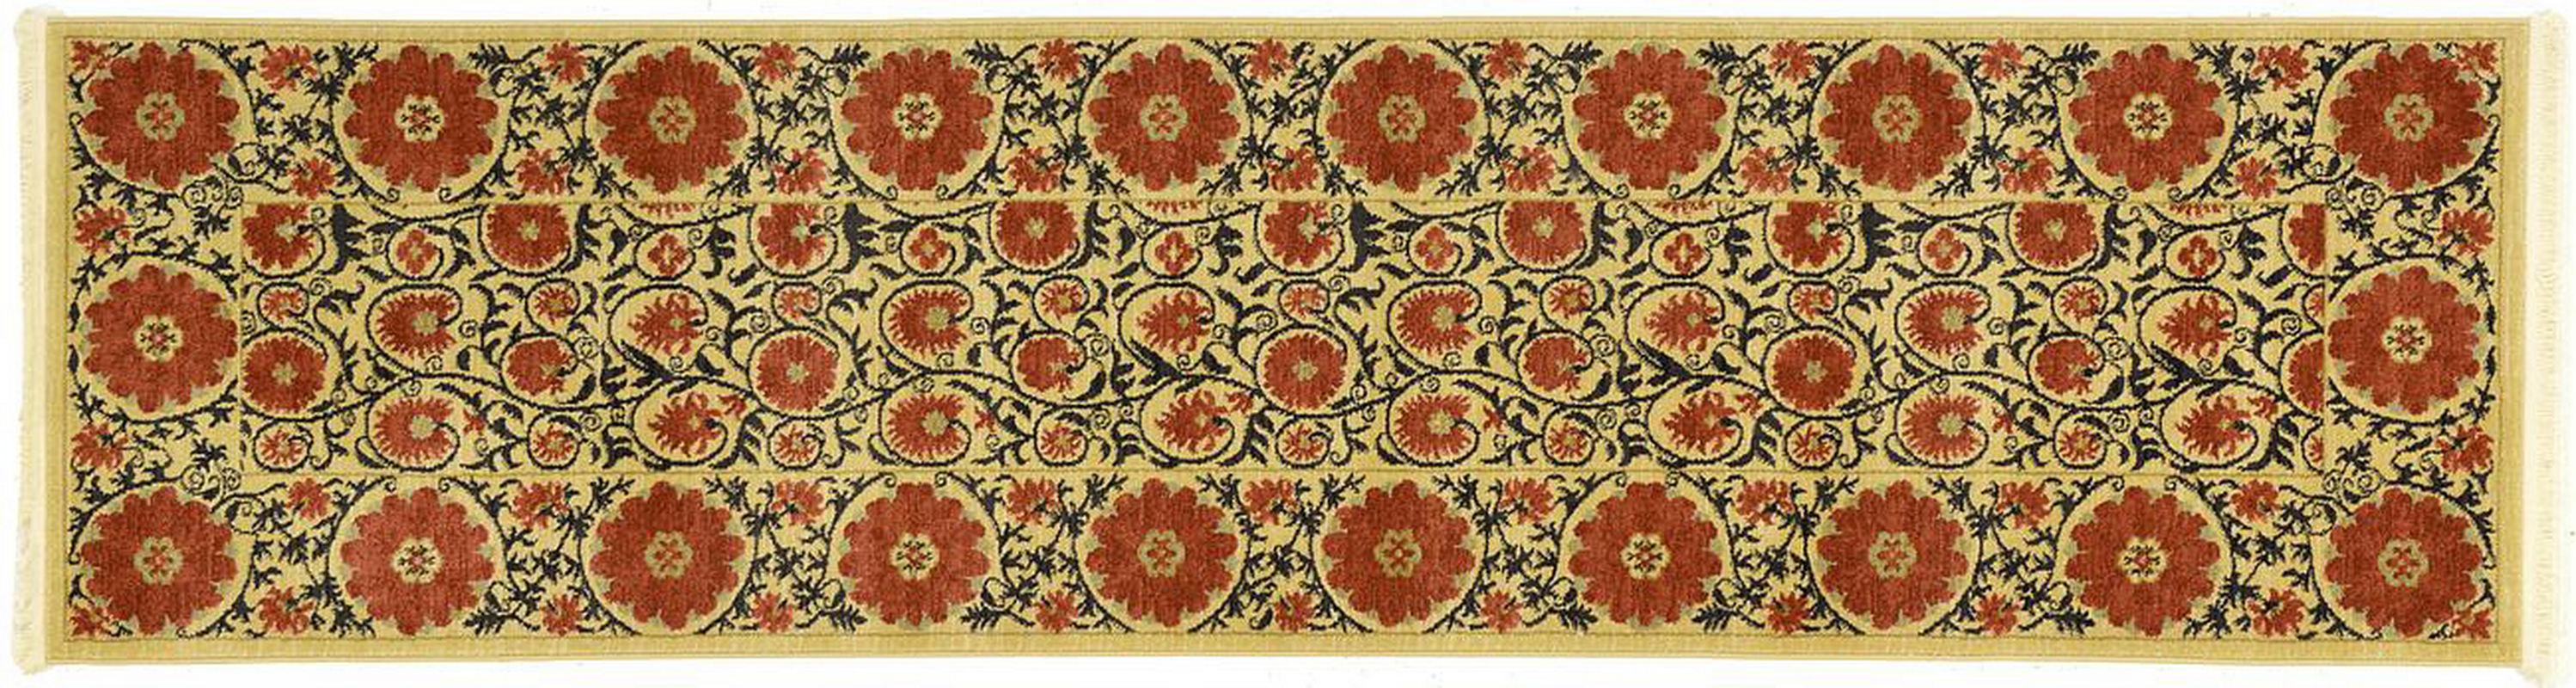 古典经典地毯ID9768